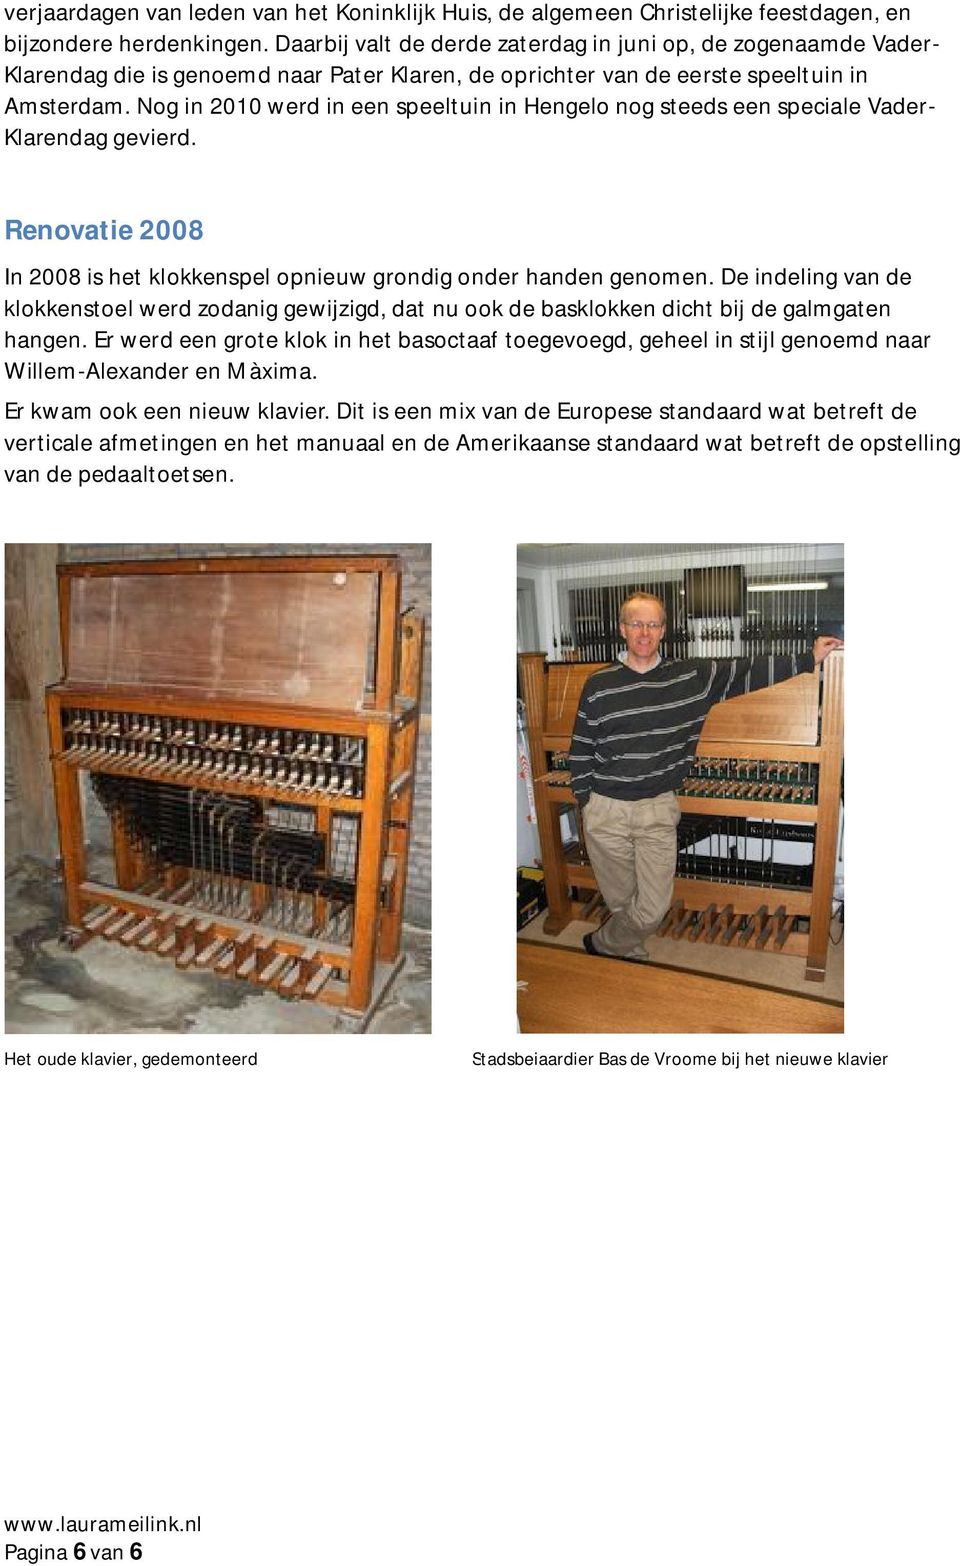 Nog in 2010 werd in een speeltuin in Hengelo nog steeds een speciale Vader- Klarendag gevierd. Renovatie 2008 In 2008 is het klokkenspel opnieuw grondig onder handen genomen.